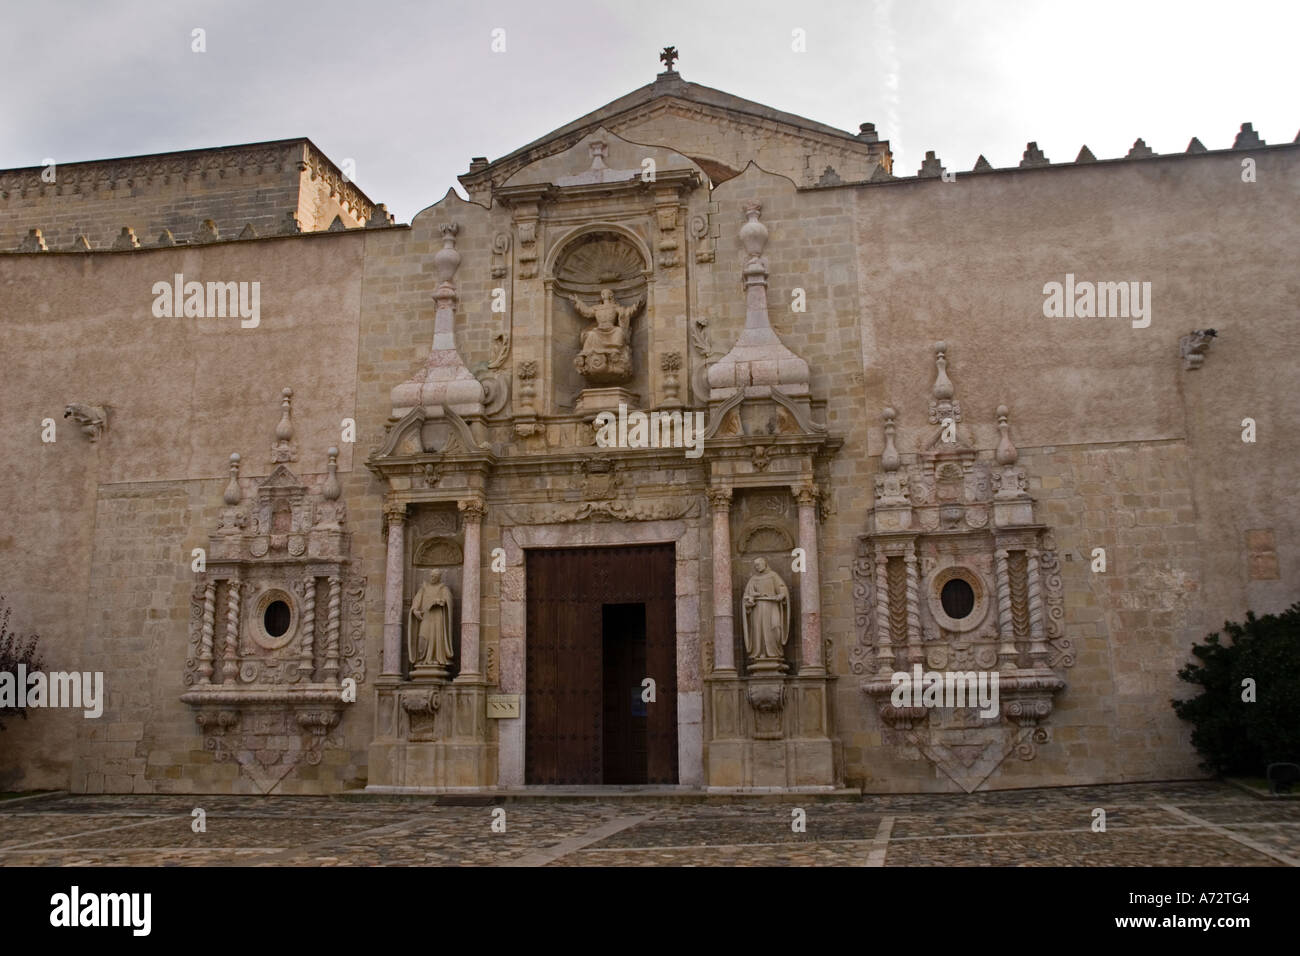 Stock Foto von Abbey de Poblet Kloster in der Nähe von Tarragona Spanien Stockfoto